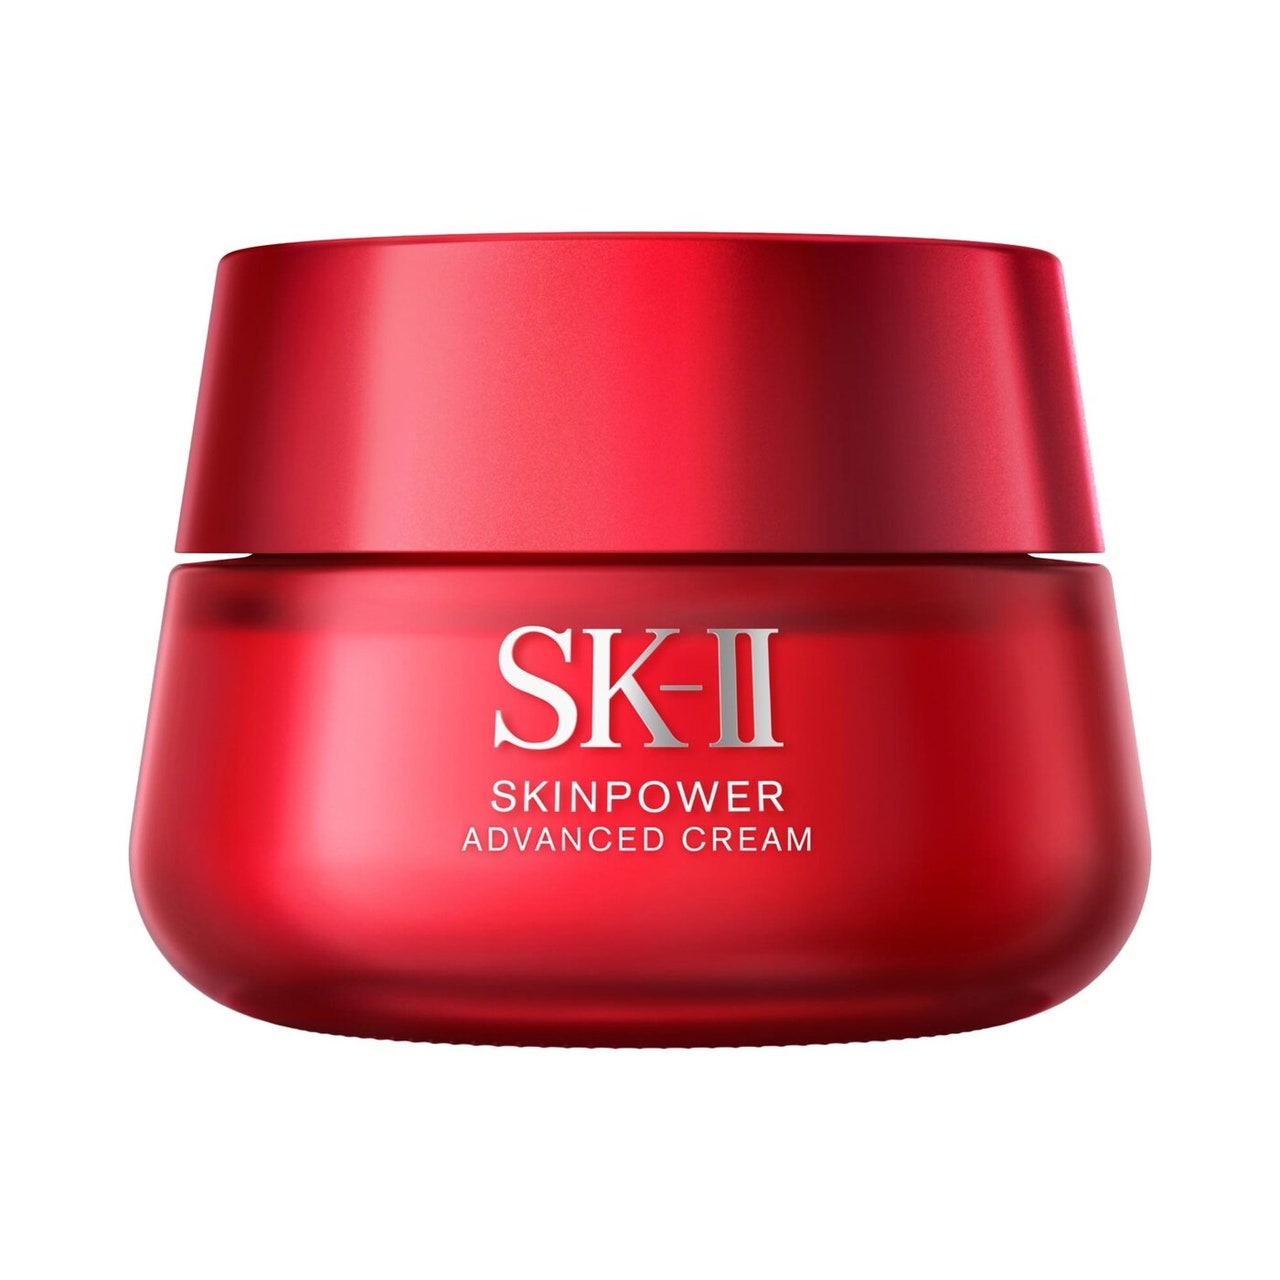 SK-II Skinpower Advanced Cream rotes Glas auf weißem Hintergrund